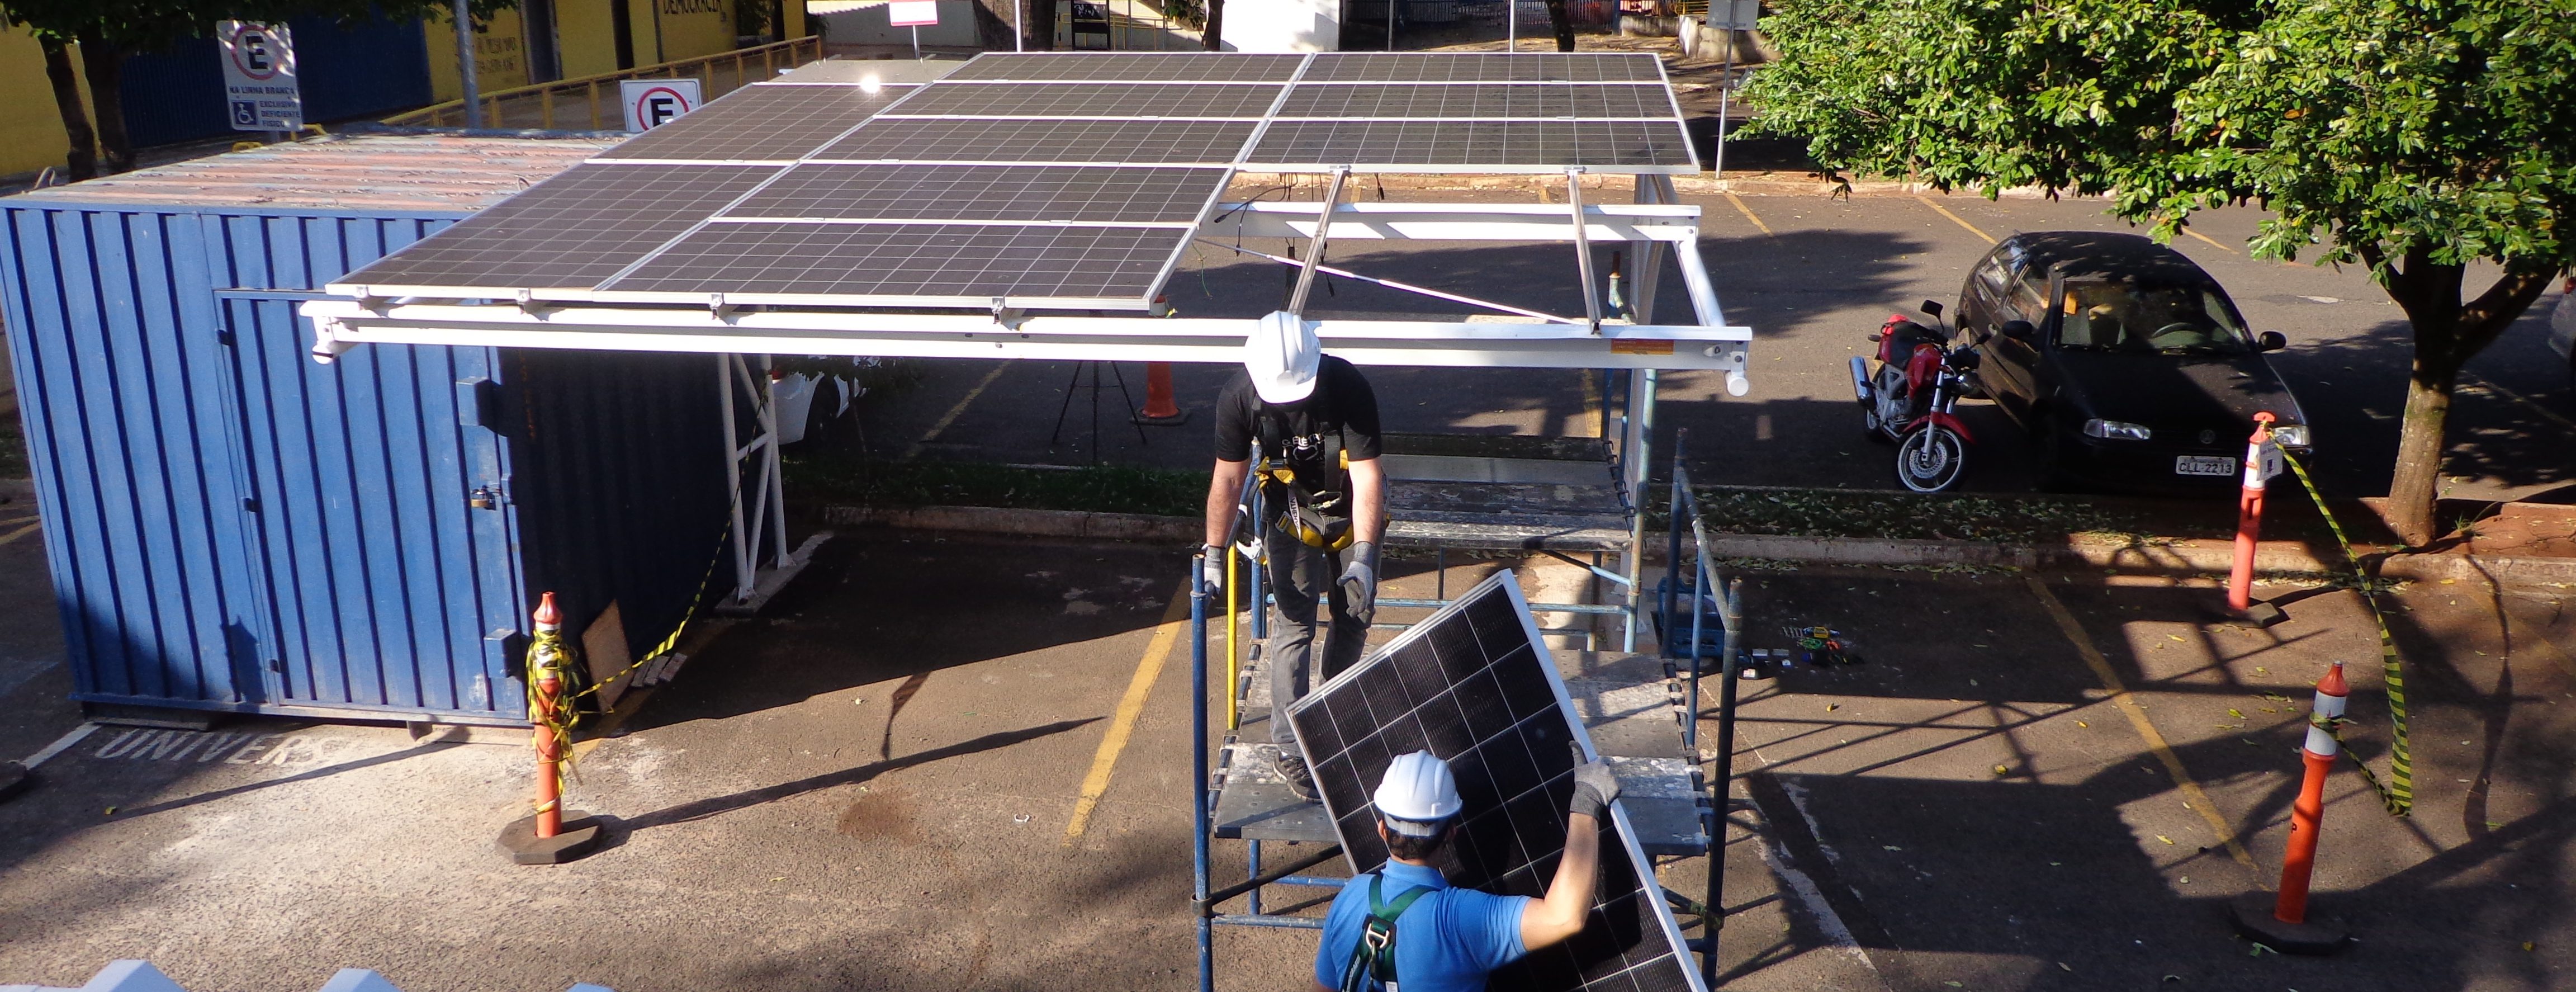 Nova turma do curso sobre projetos e instalação de painéis solares – presencial – recebe inscrições até 10/06